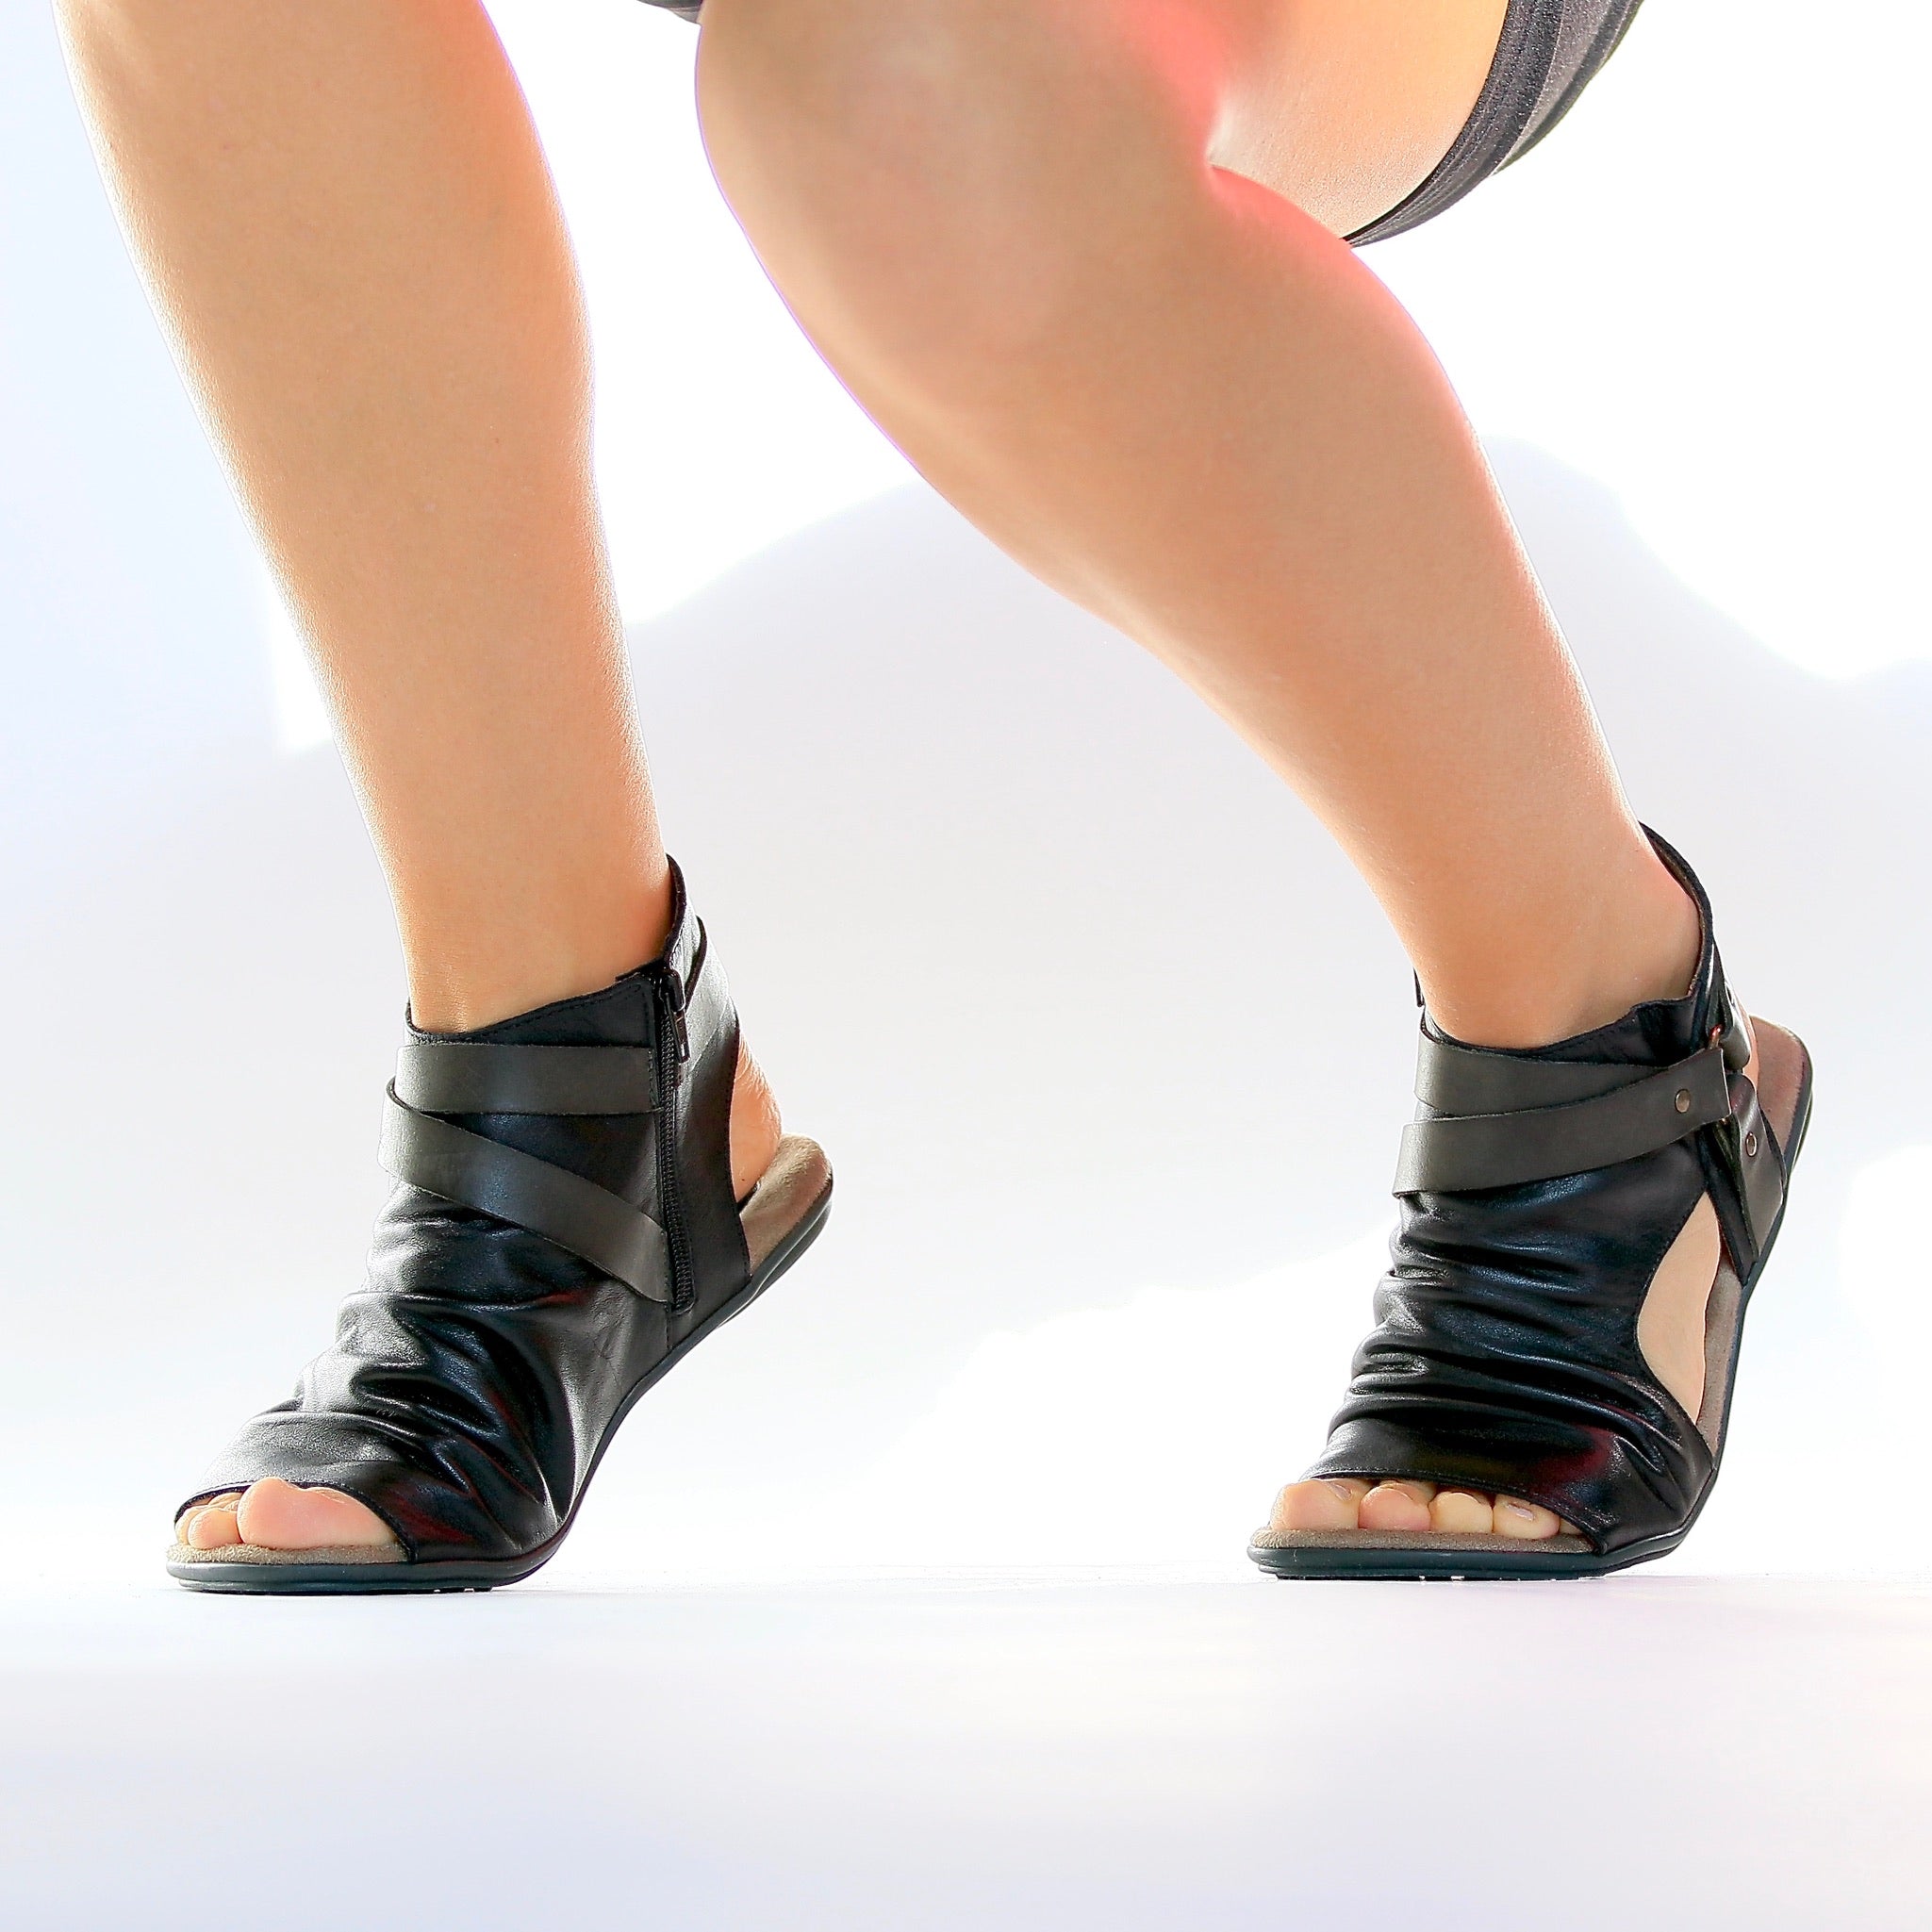 sandals footwear women's